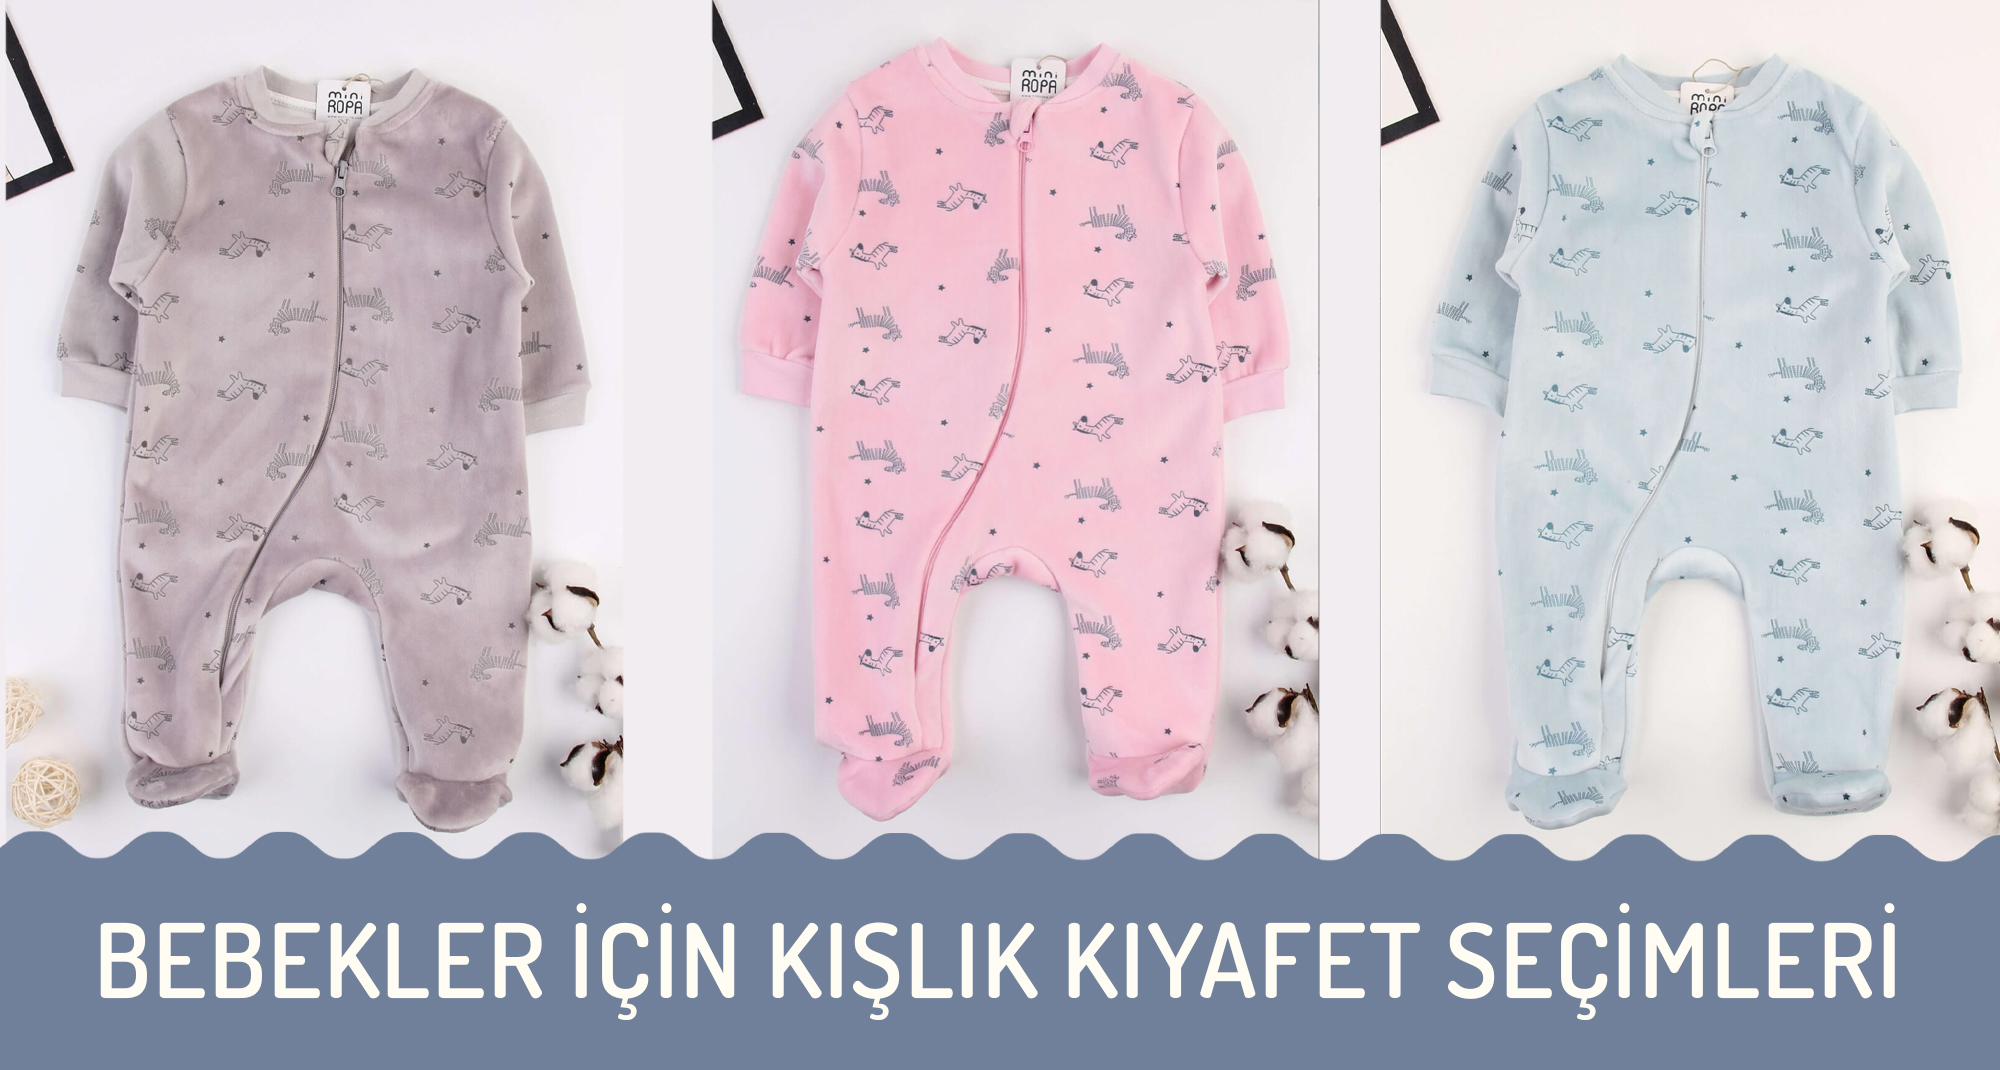 Bebekler İçin Kışlık Kıyafet Seçimleri I Miniropa Bebek Kışlık Giyim